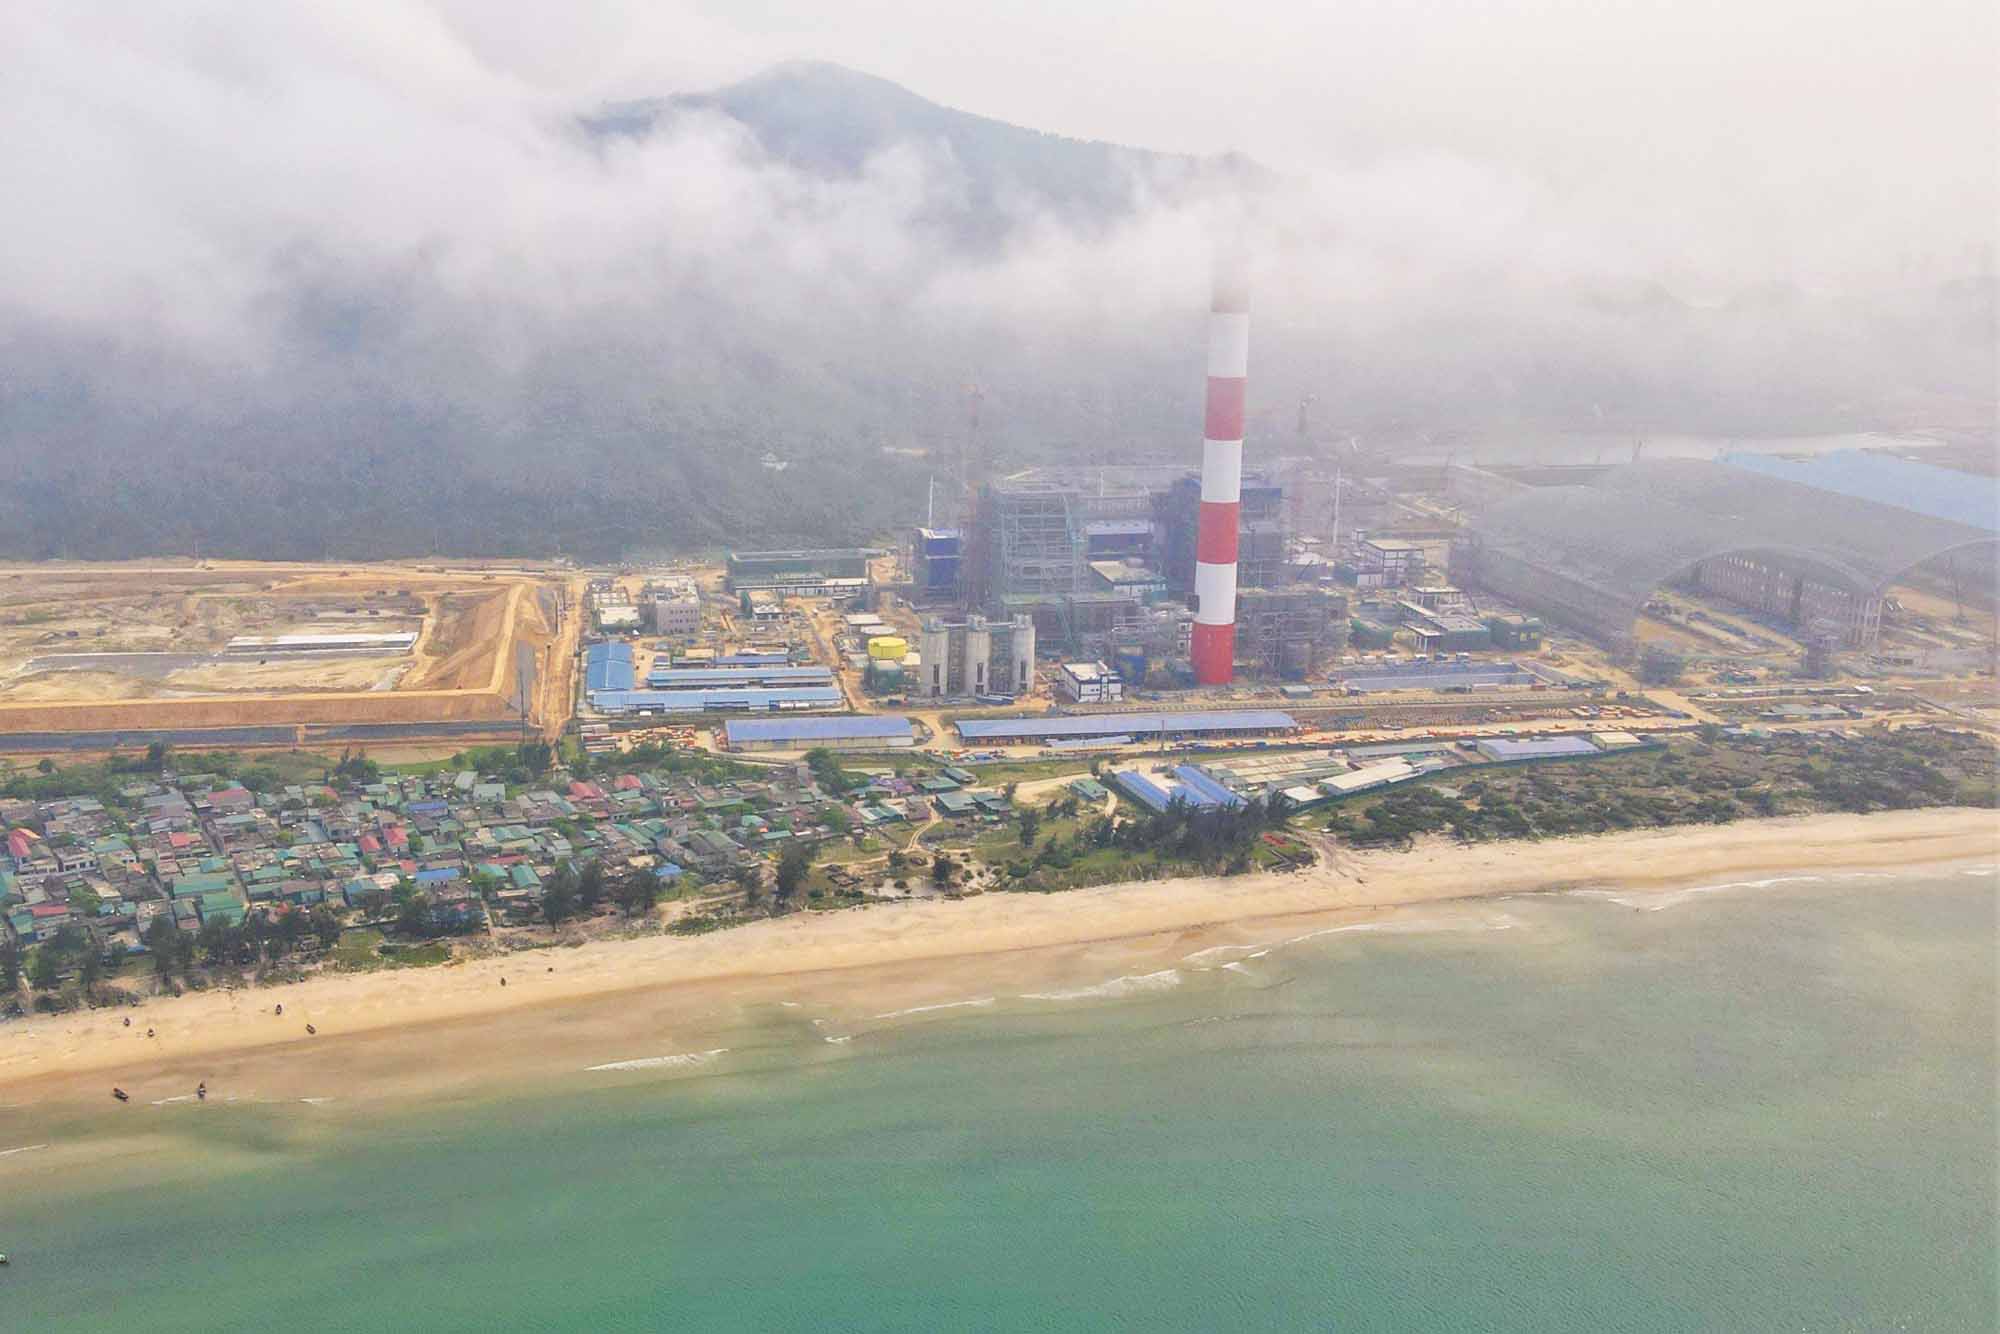 Nhà máy Nhiệt điện Vũng Áng 2 đang được triển khai thi công cạnh Nhà máy Nhiệt điện Vũng Áng 1 (đã hoàn thành và đi vào hoạt động từ lâu).